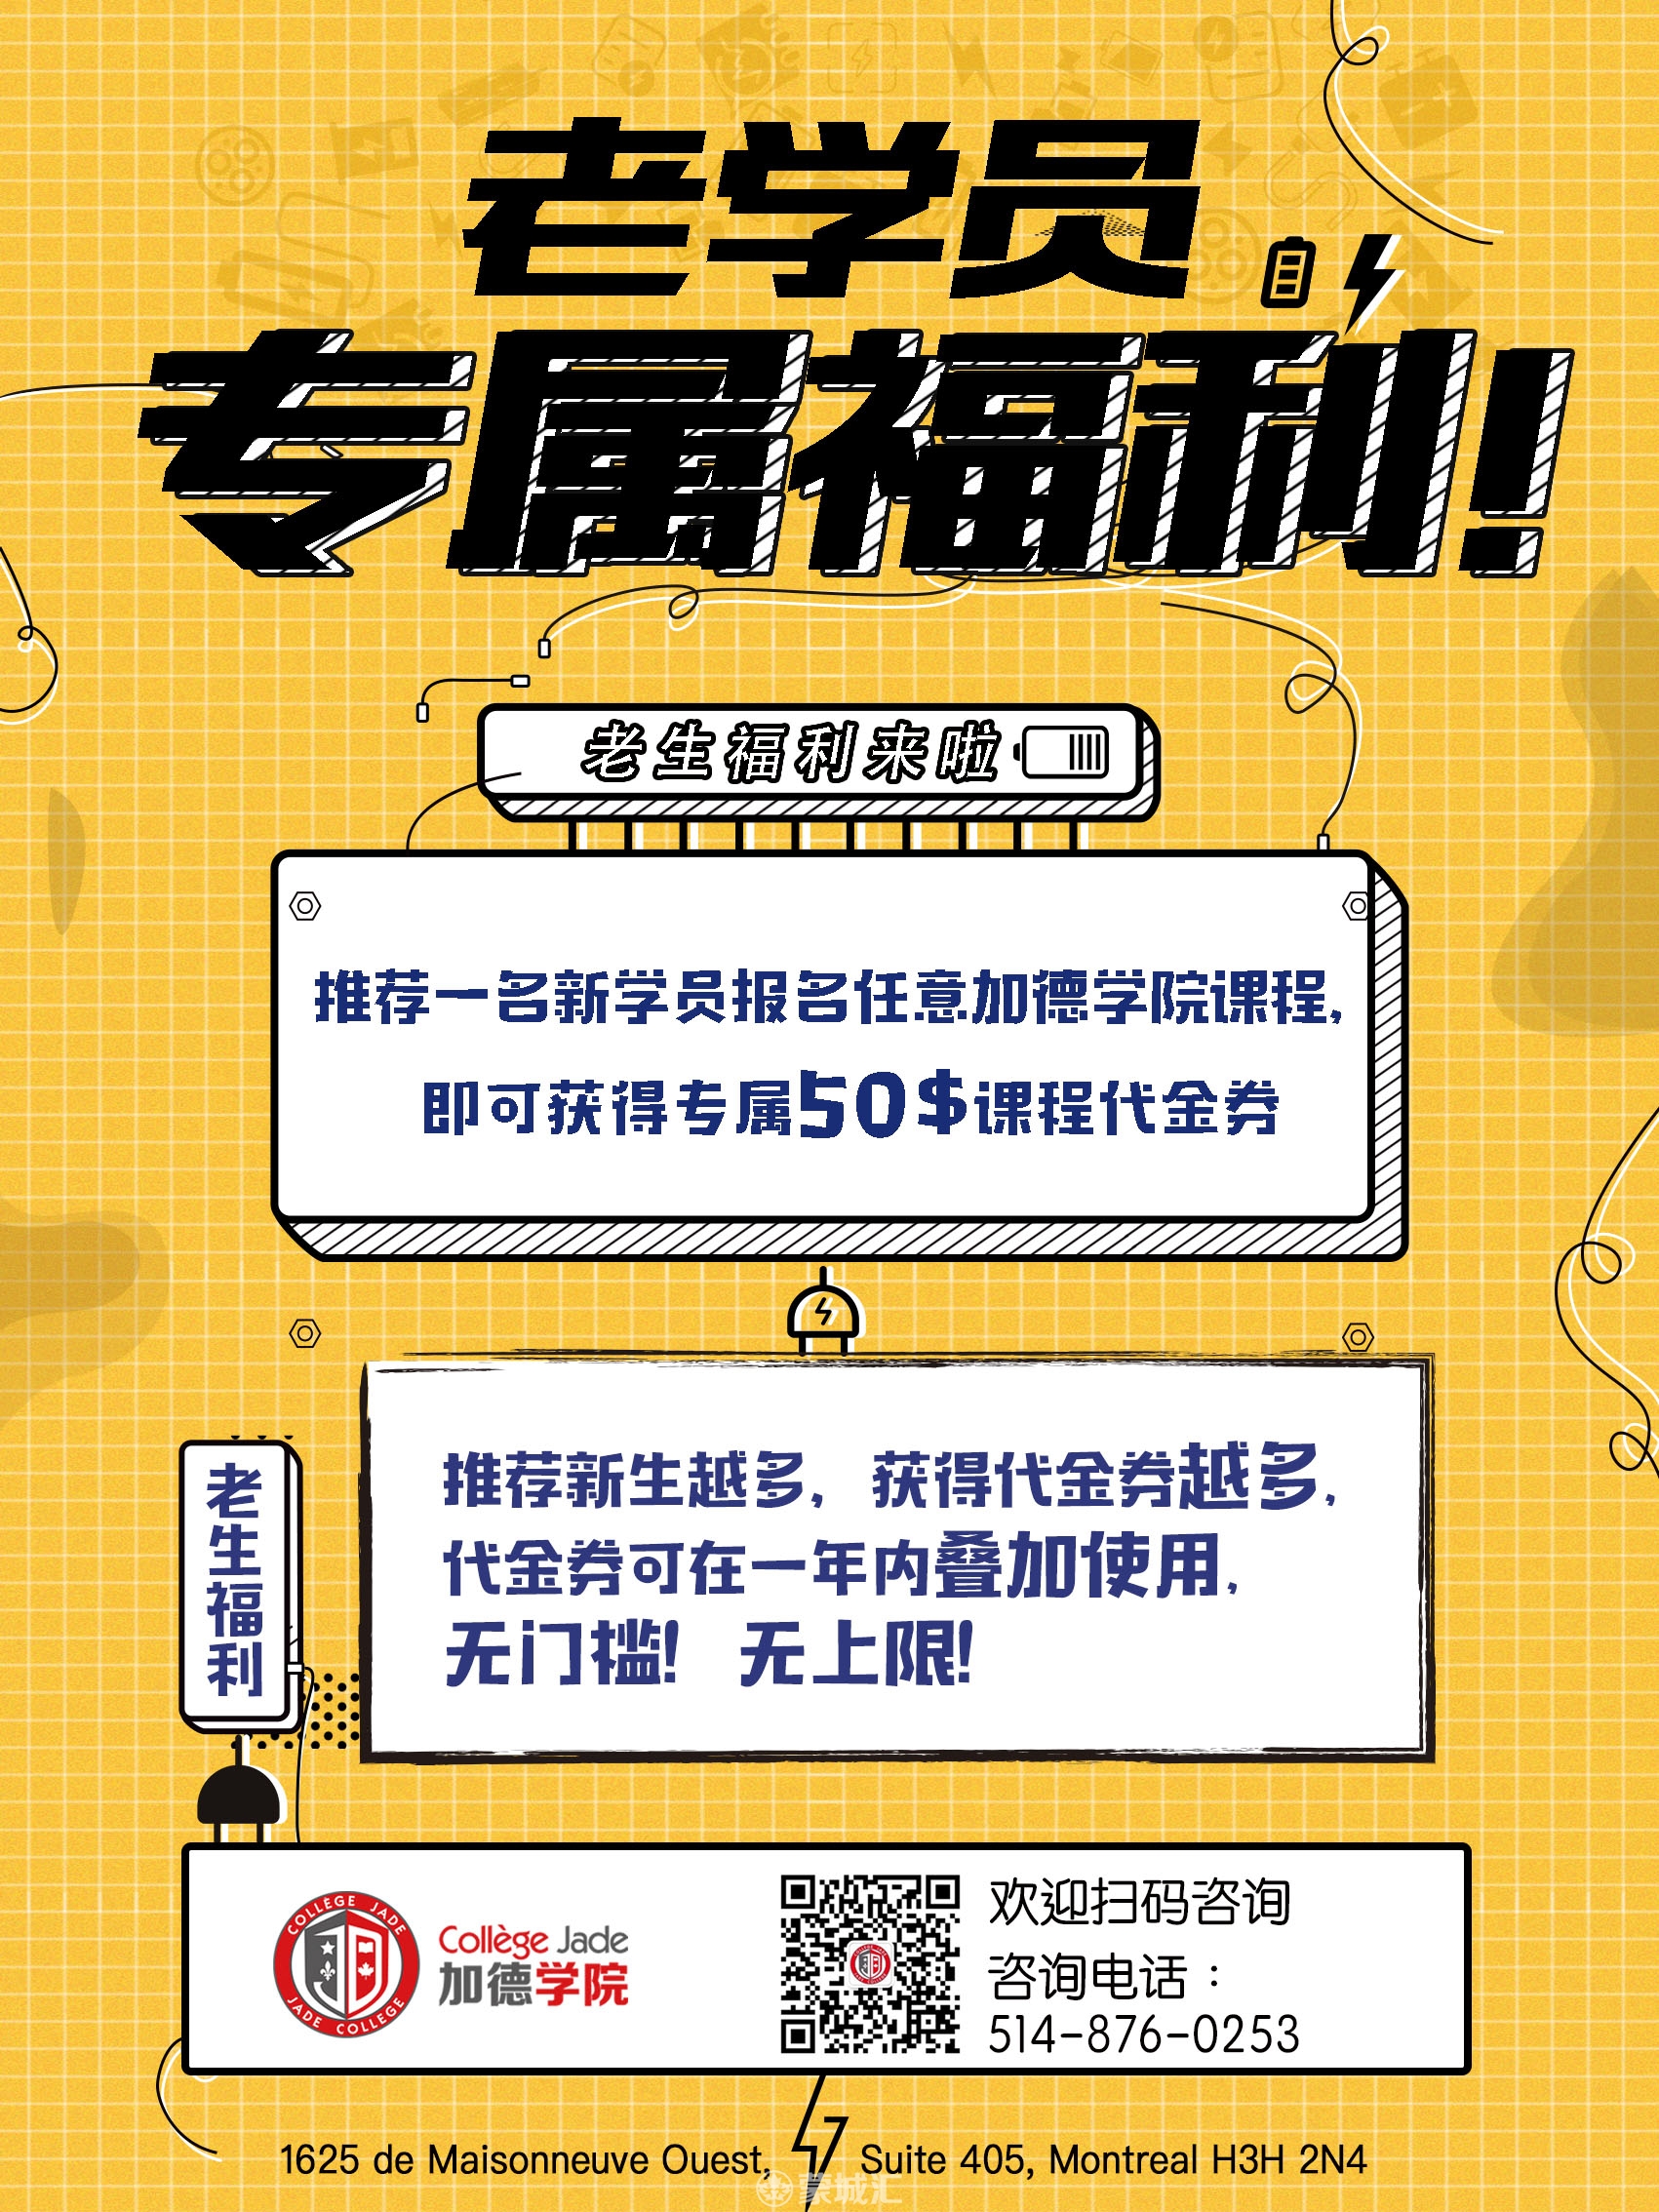 WeChat Image_20190219143538.jpg